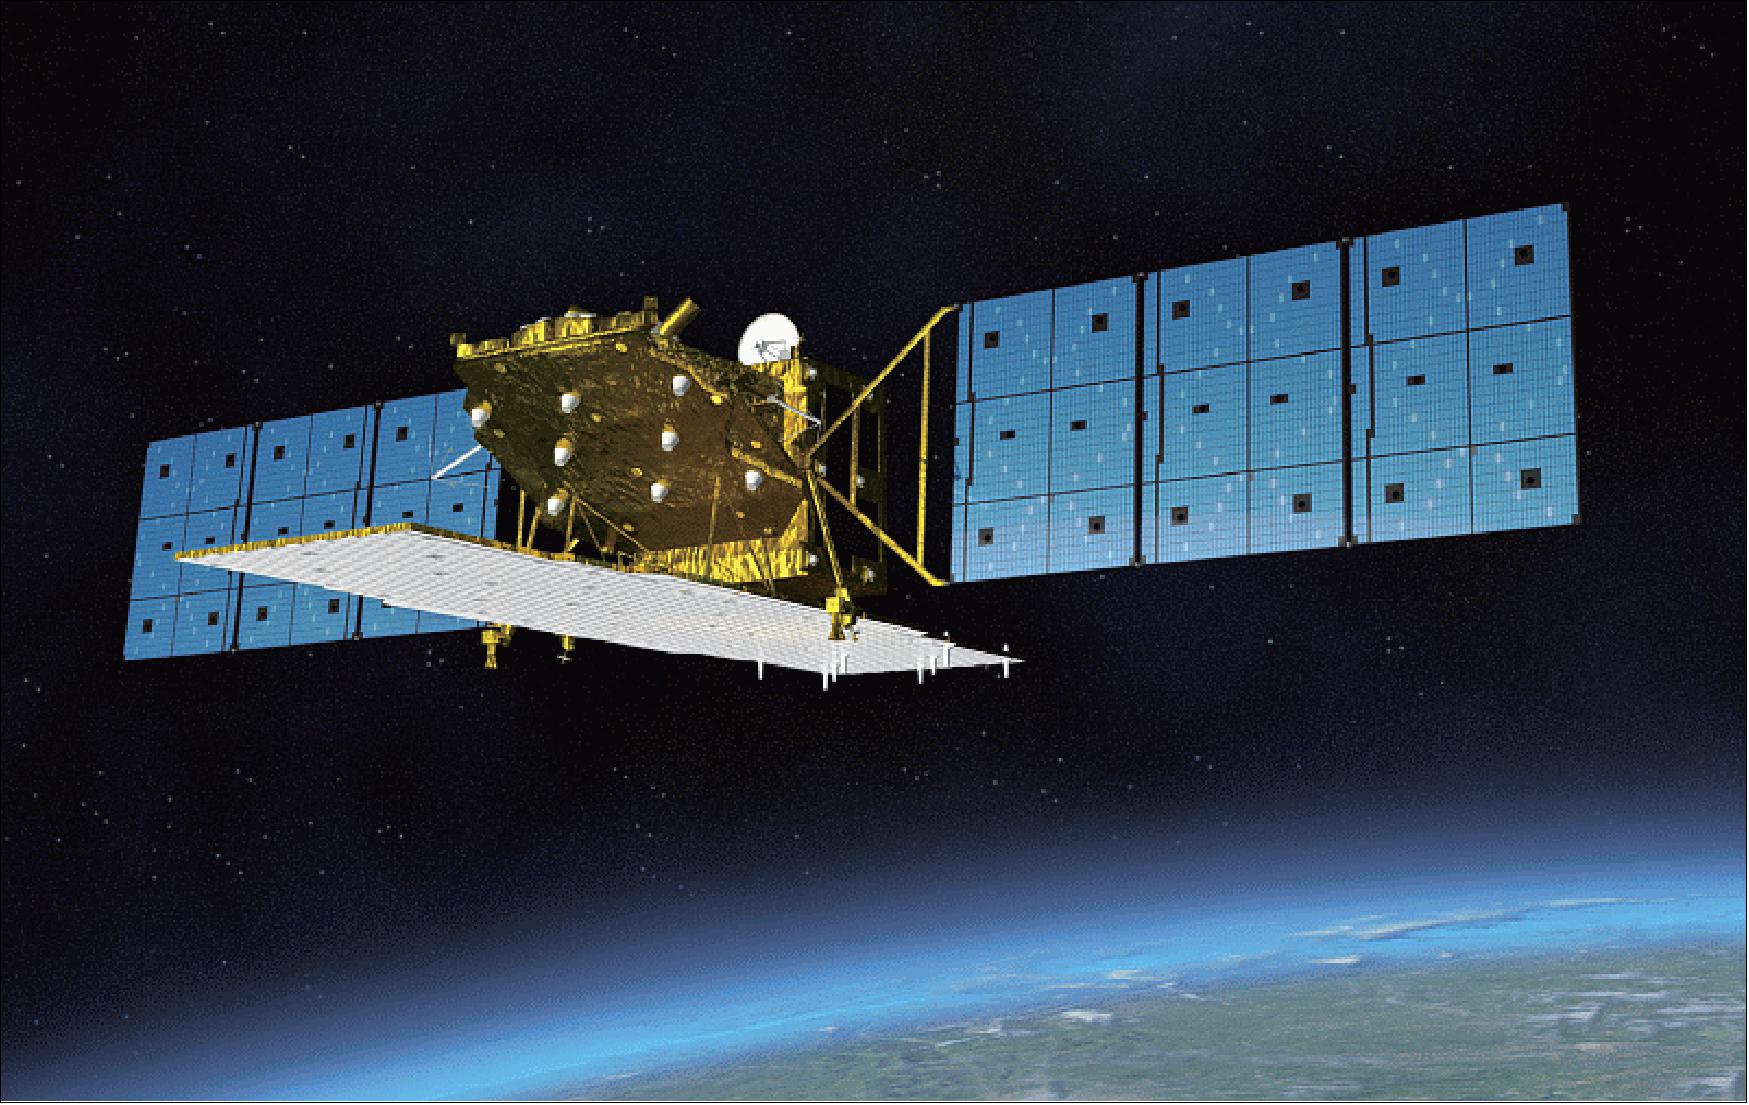 Figure 2: Artist's rendition of the ALOS-2 spacecraft in orbit (image credit: JAXA)